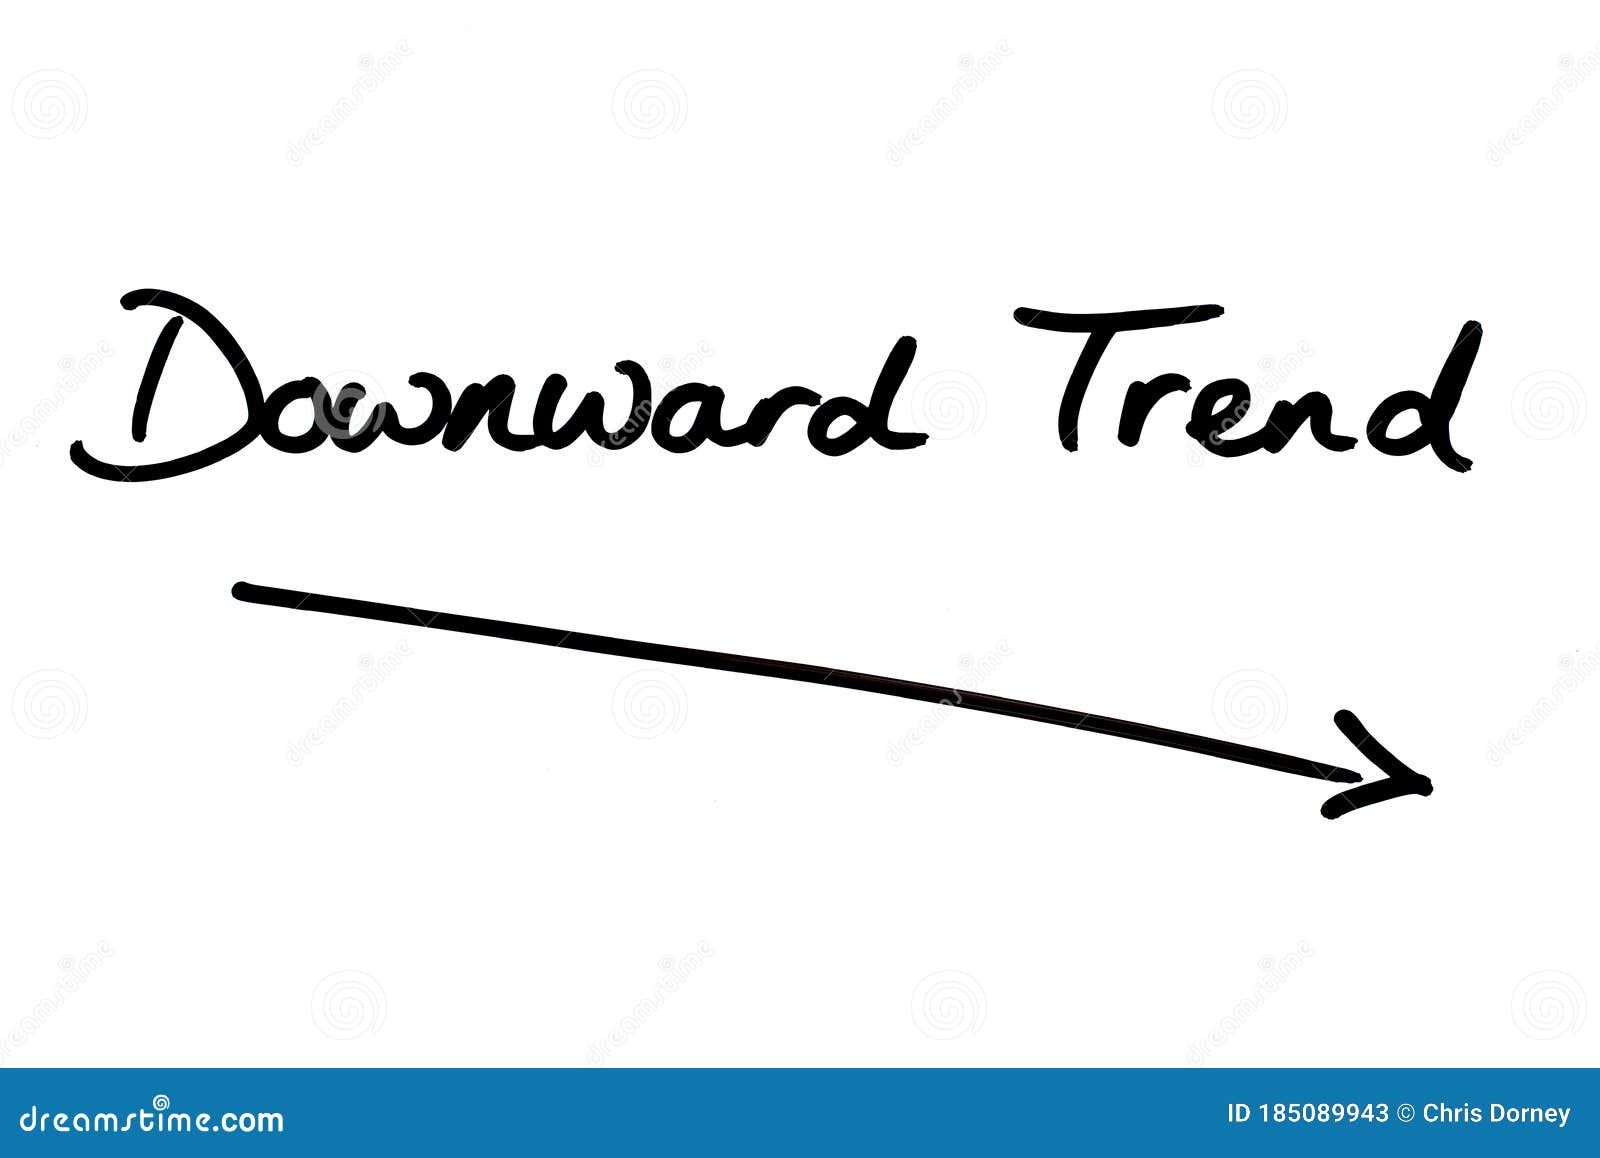 downward trend